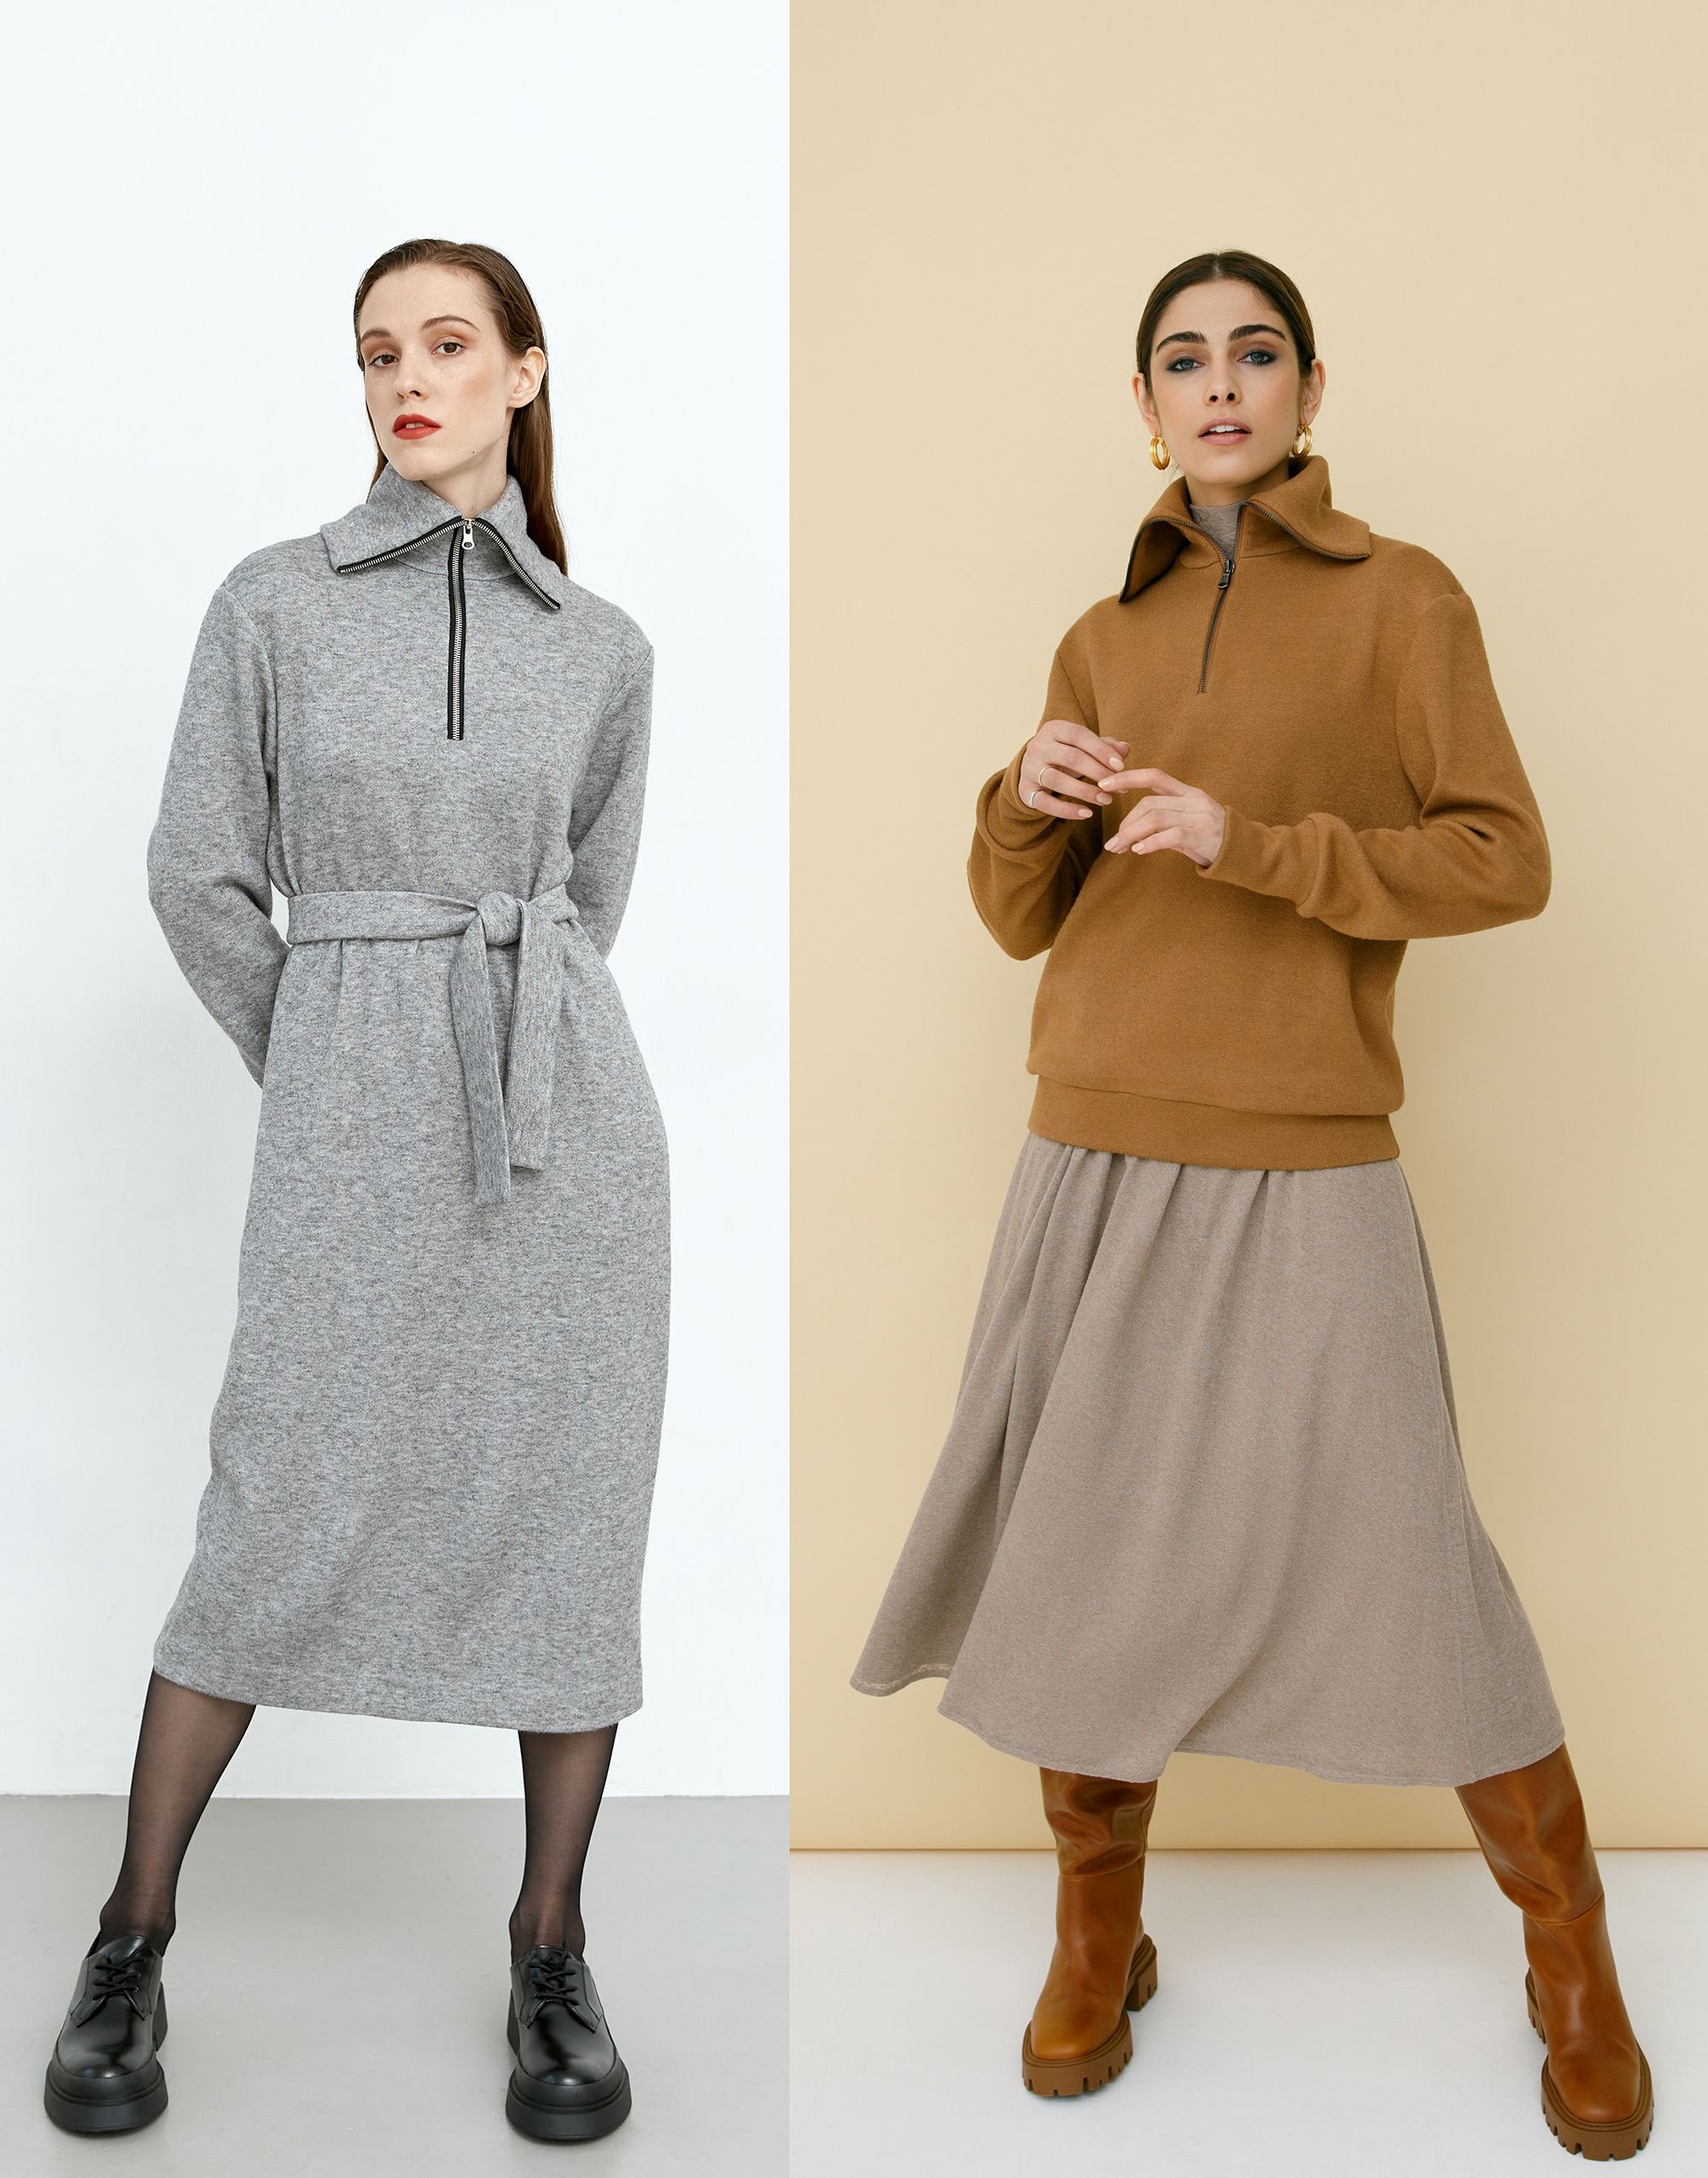 Dress and sweater, pattern №816